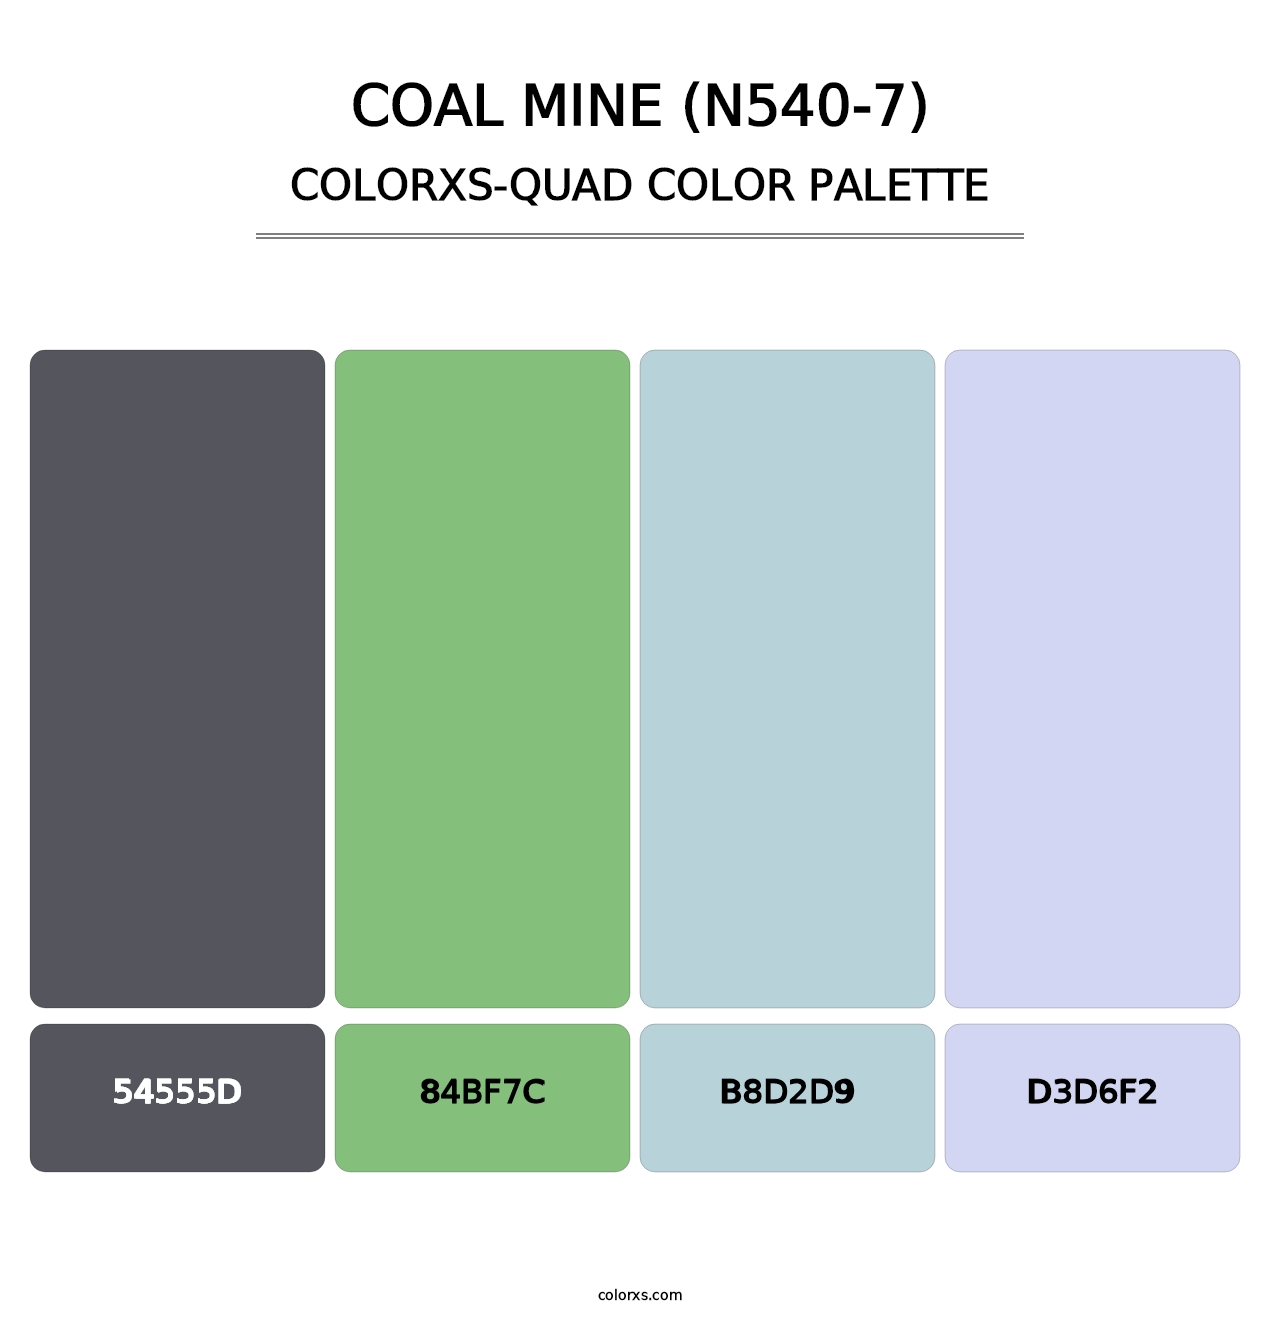 Coal Mine (N540-7) - Colorxs Quad Palette